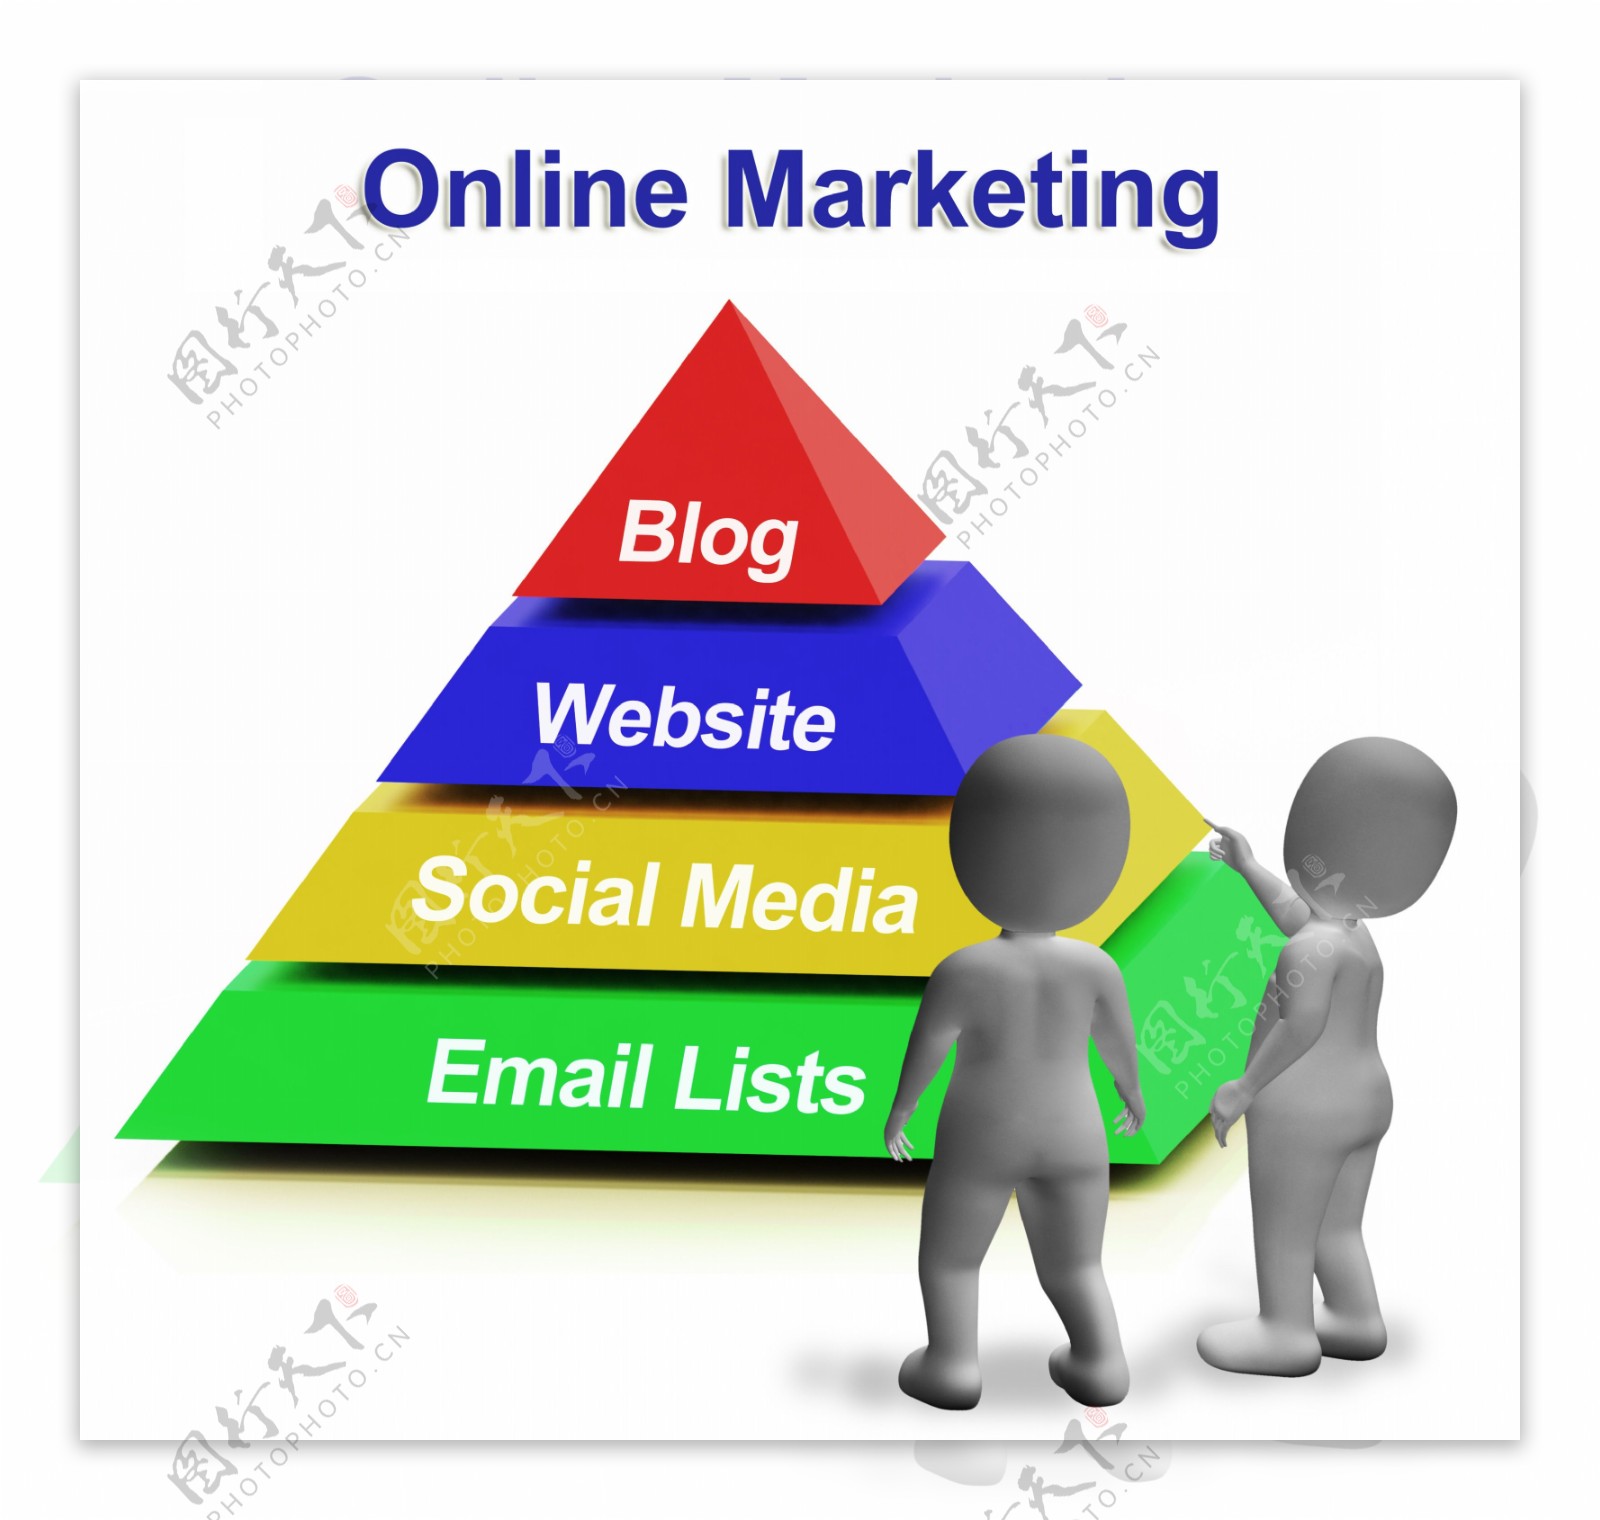 在线营销的金字塔有博客网站的社会媒体和邮件列表